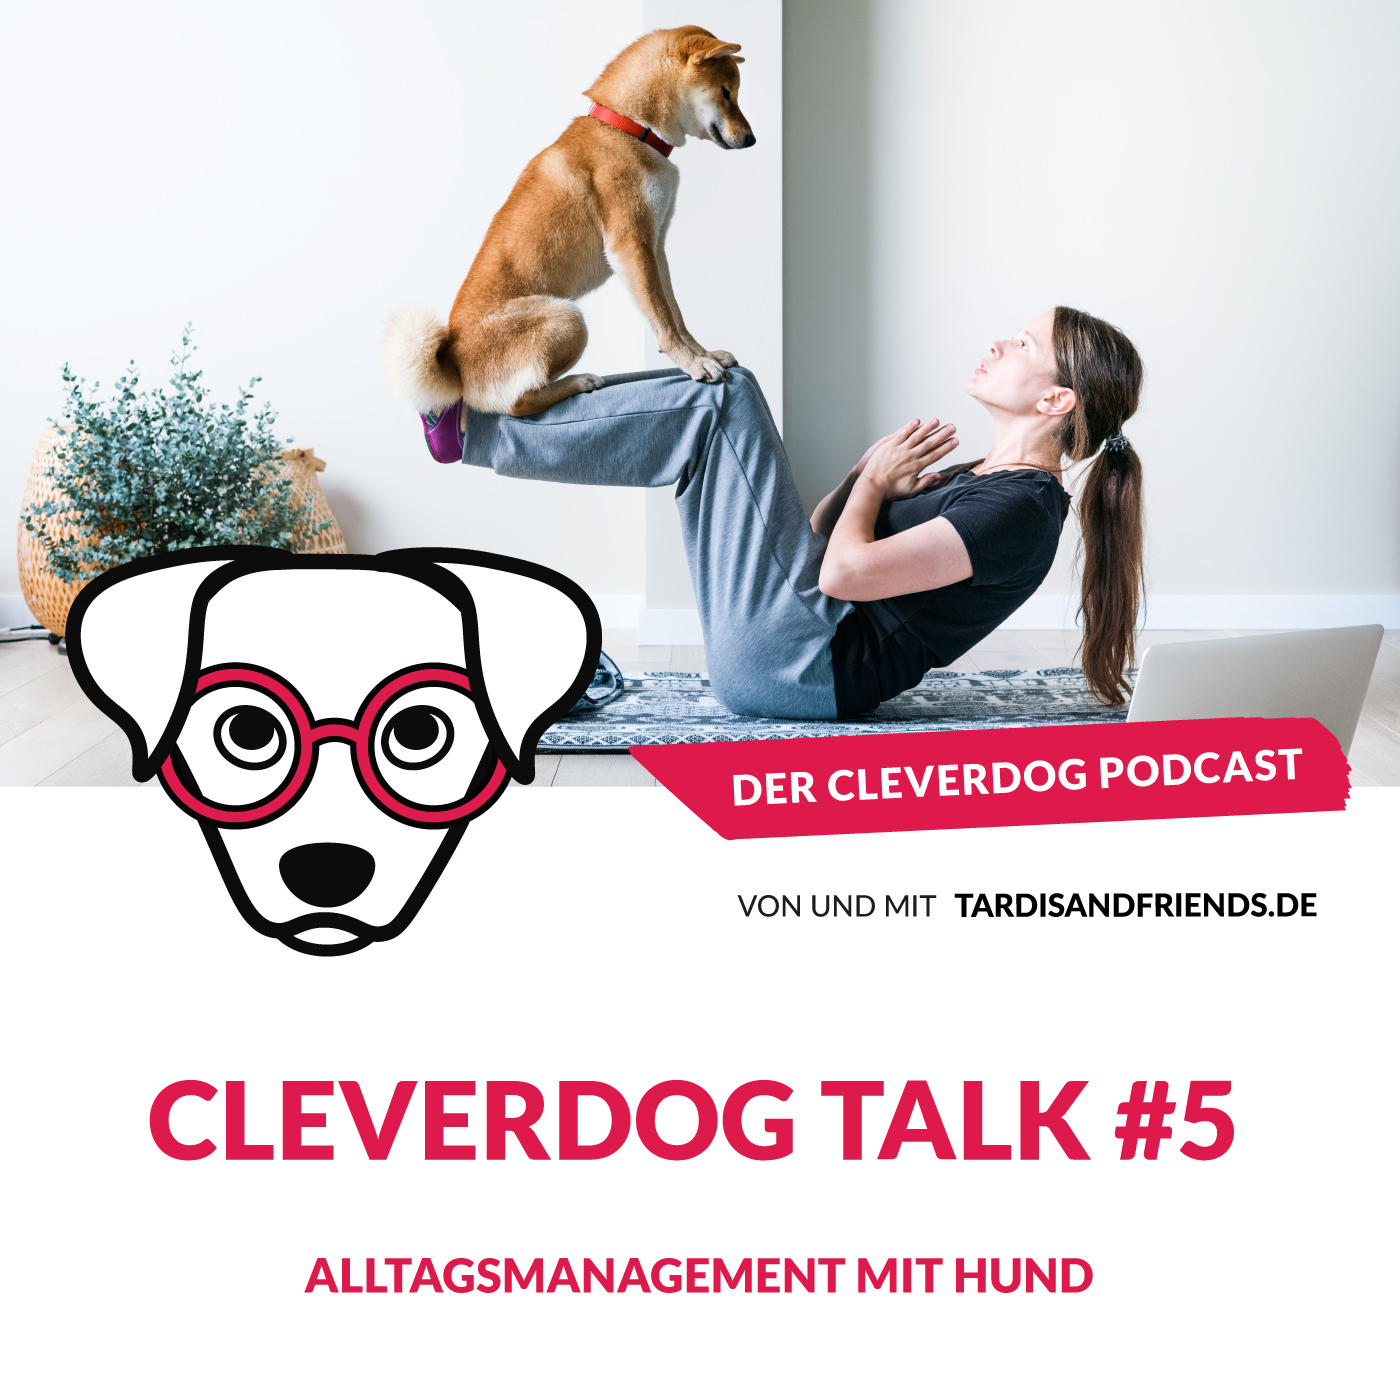 Cleverdog Talk #5 – Alltagsmanagement mit Hund